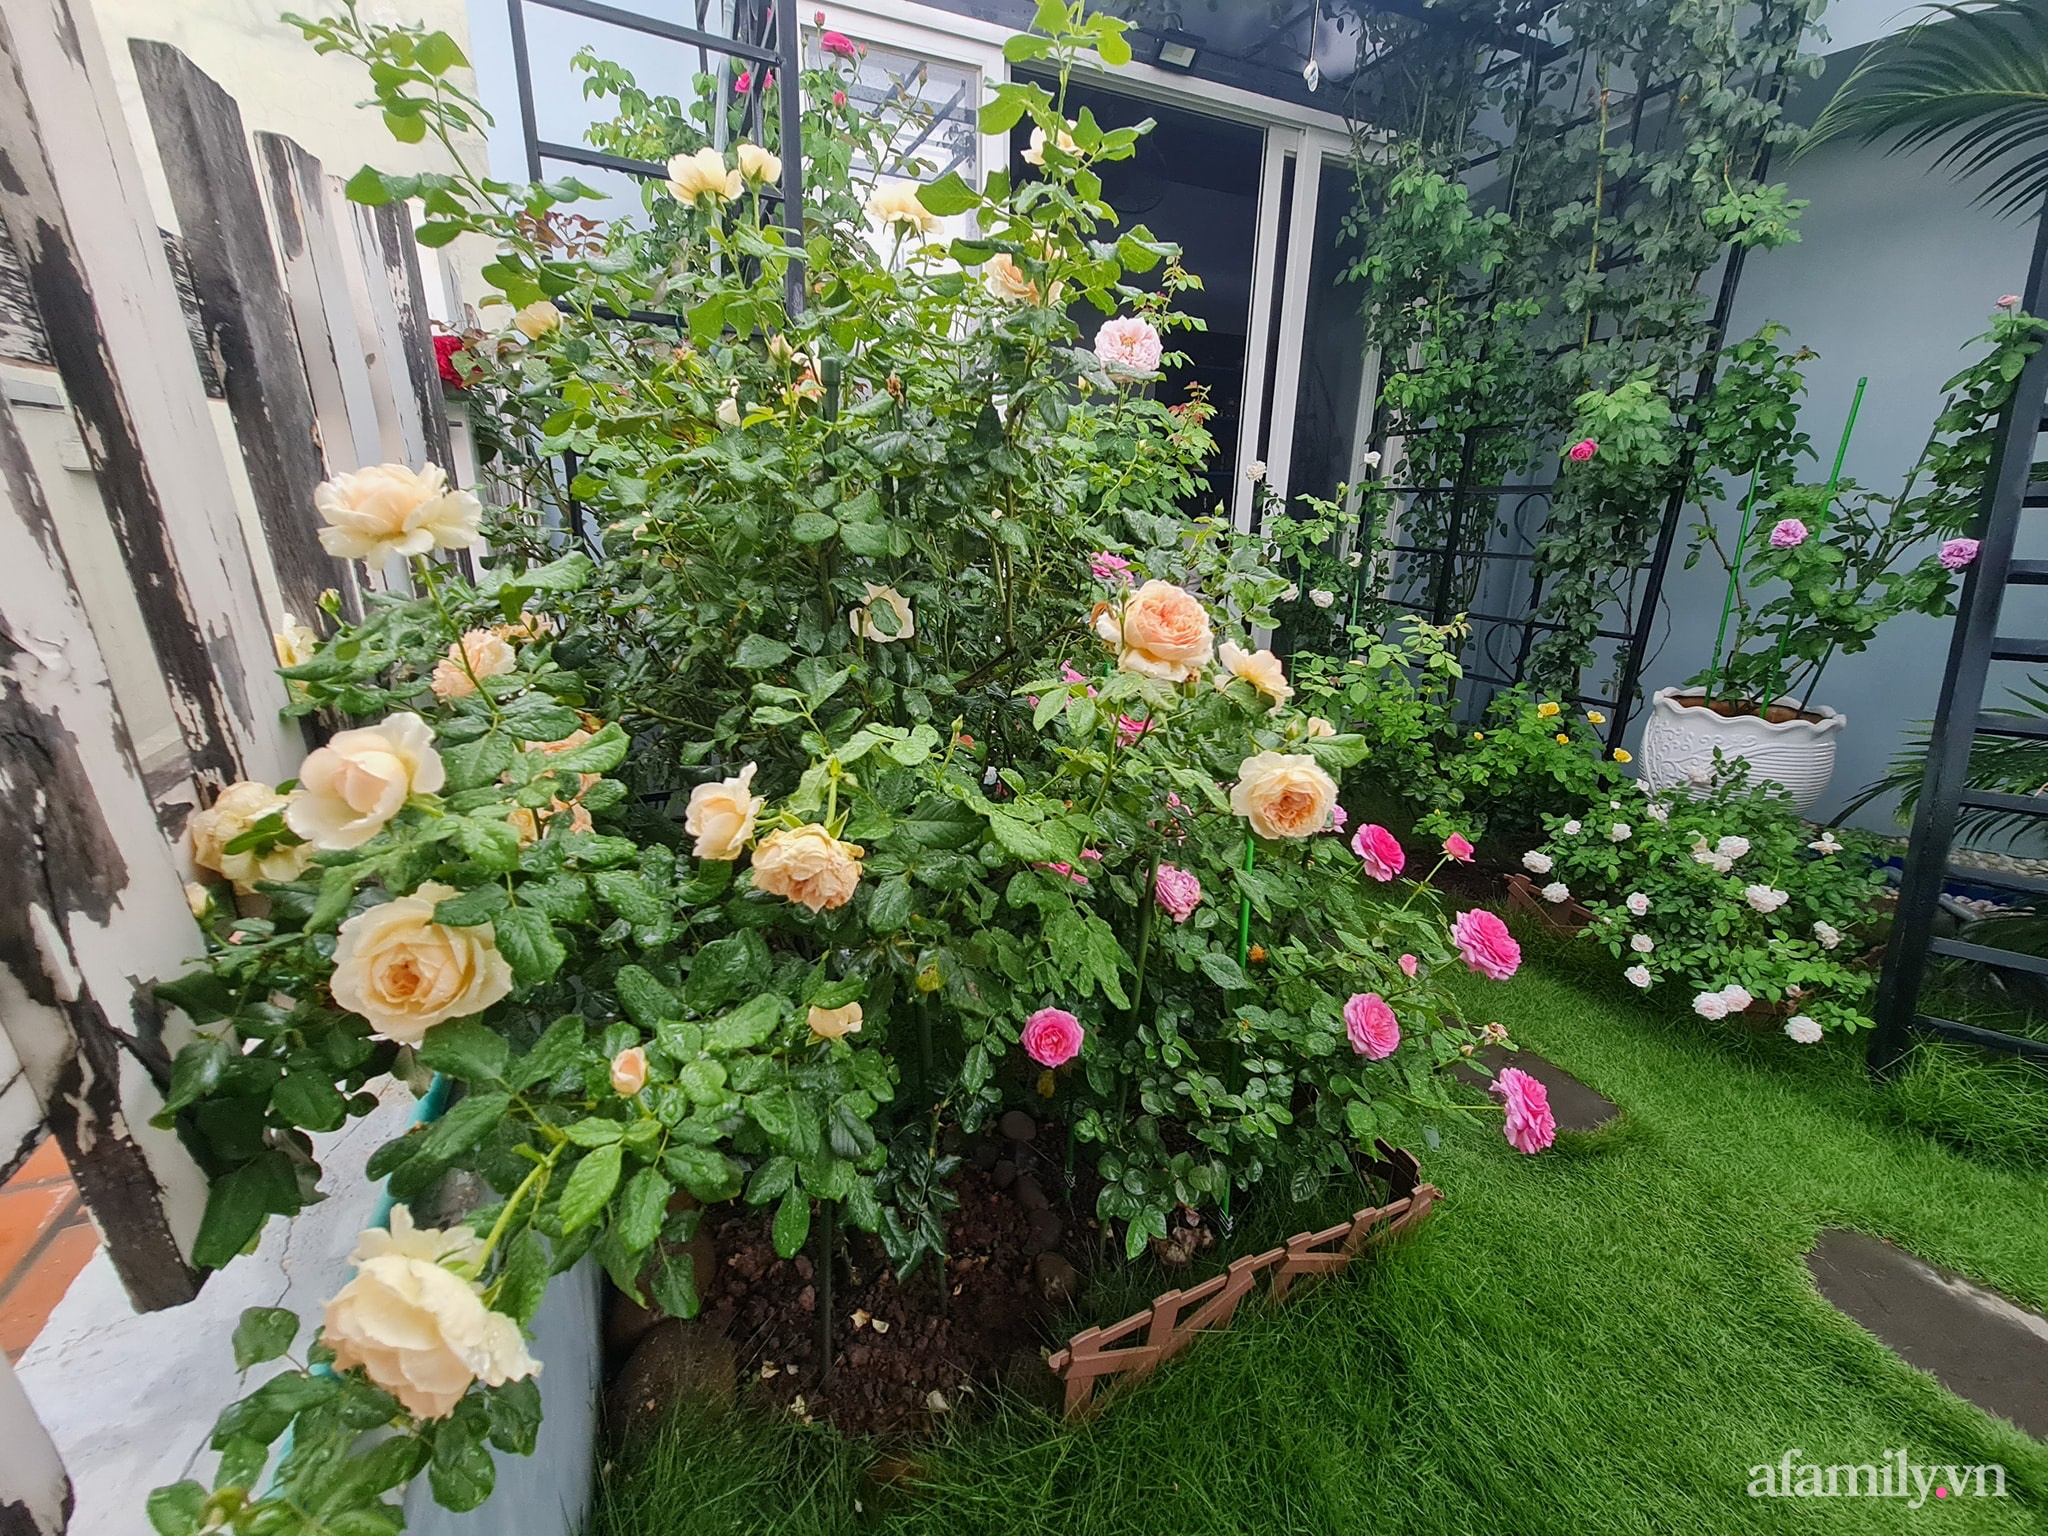 Đắm say trước vẻ đẹp ngọt lịm tim của vườn hồng rực rỡ trên sân thượng ở Bình Dương - Ảnh 9.